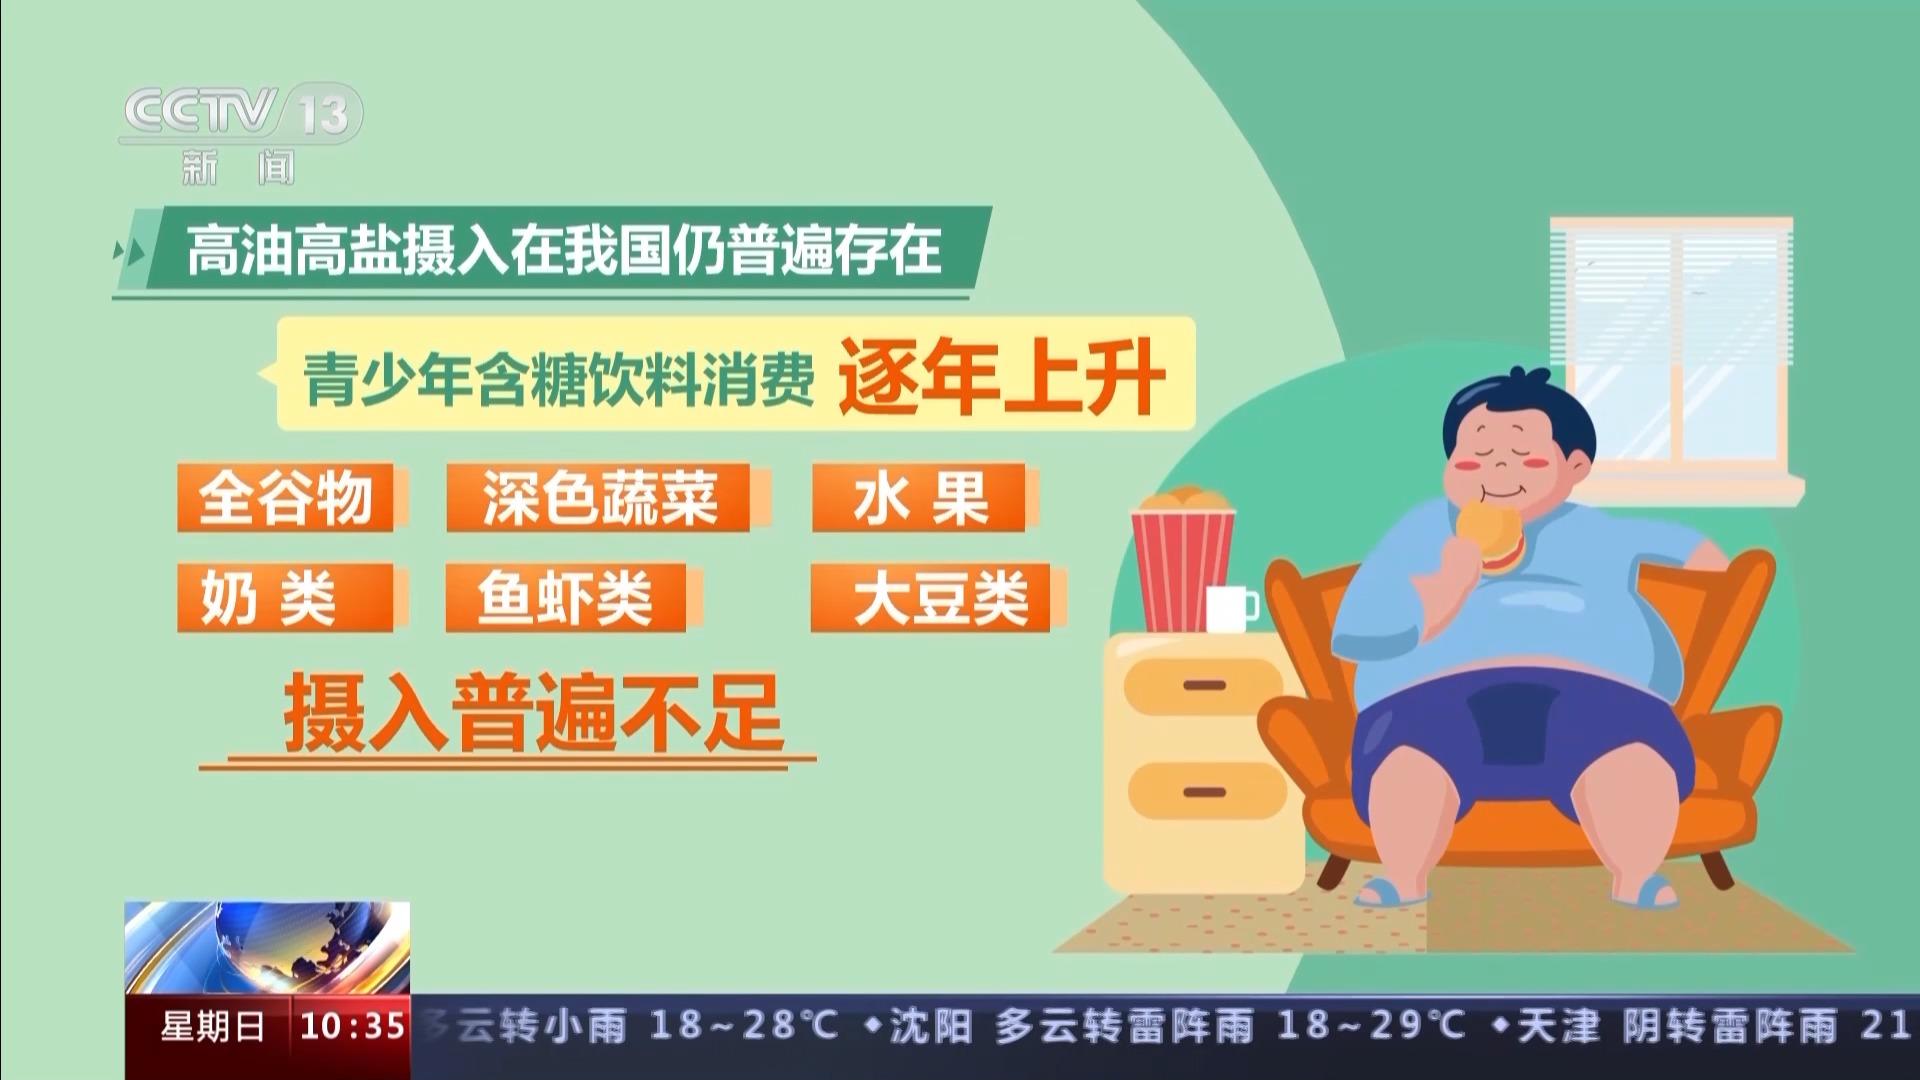 完美体育《中国居民膳食营养素参考摄入量》发布 我国居民营养状况持续改善(图4)